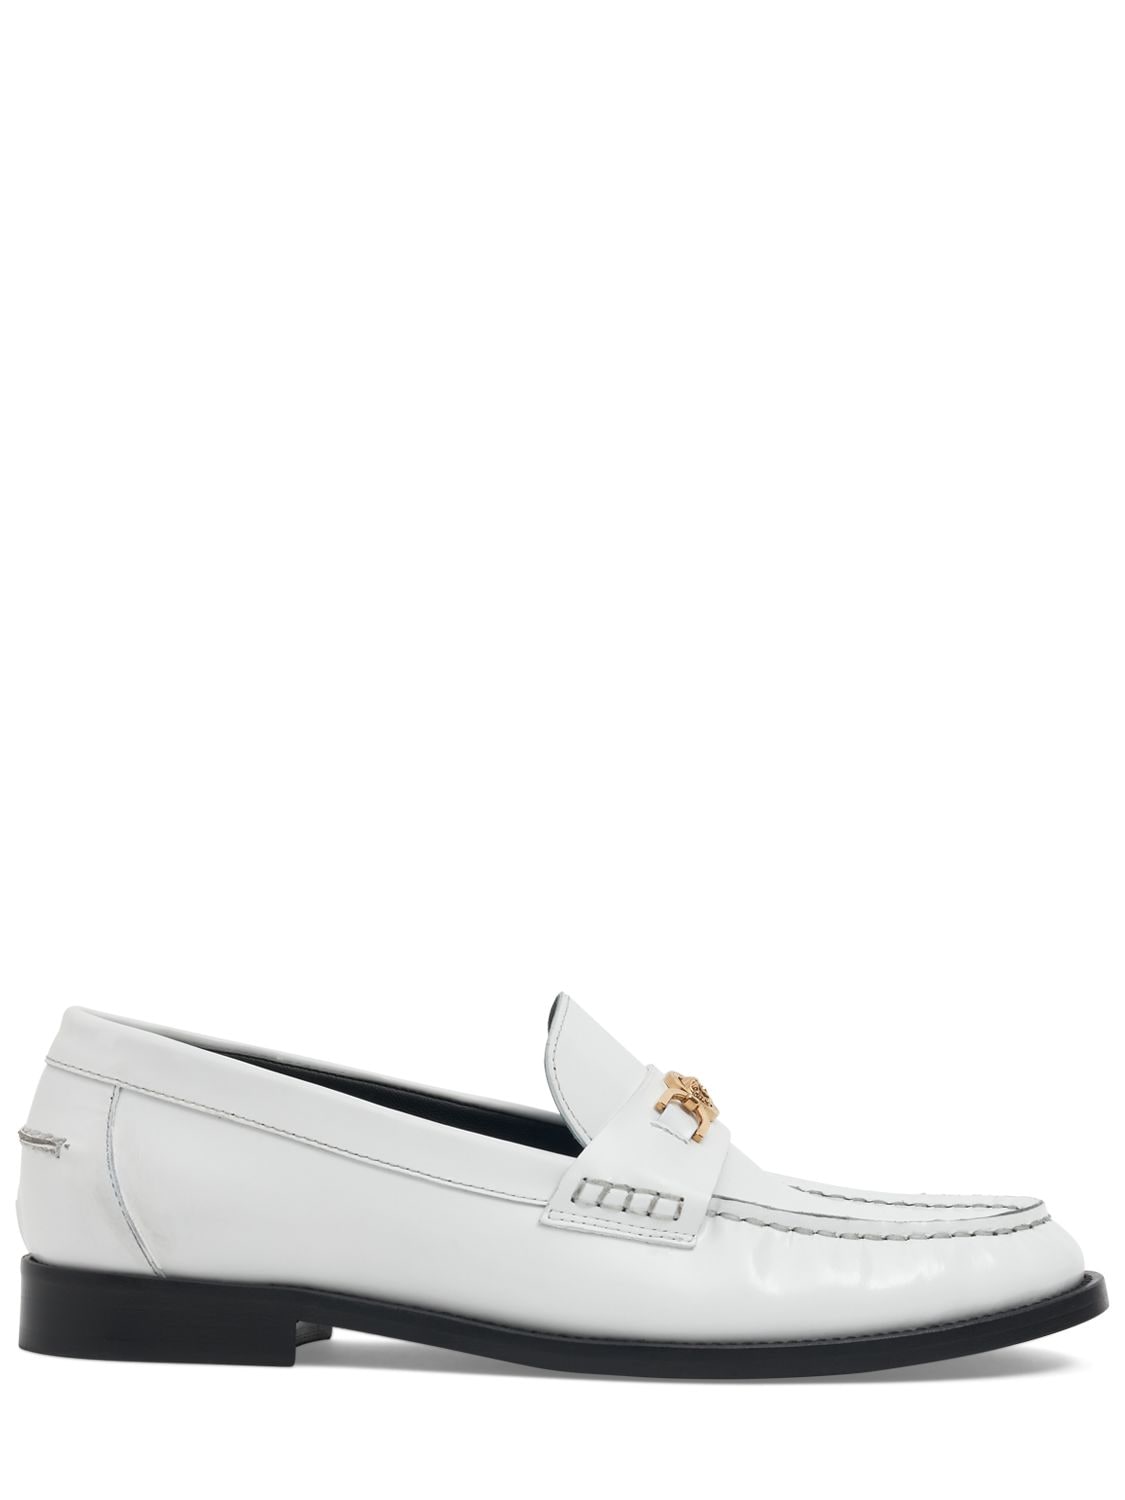 Versace 20毫米皮革乐福鞋 In White